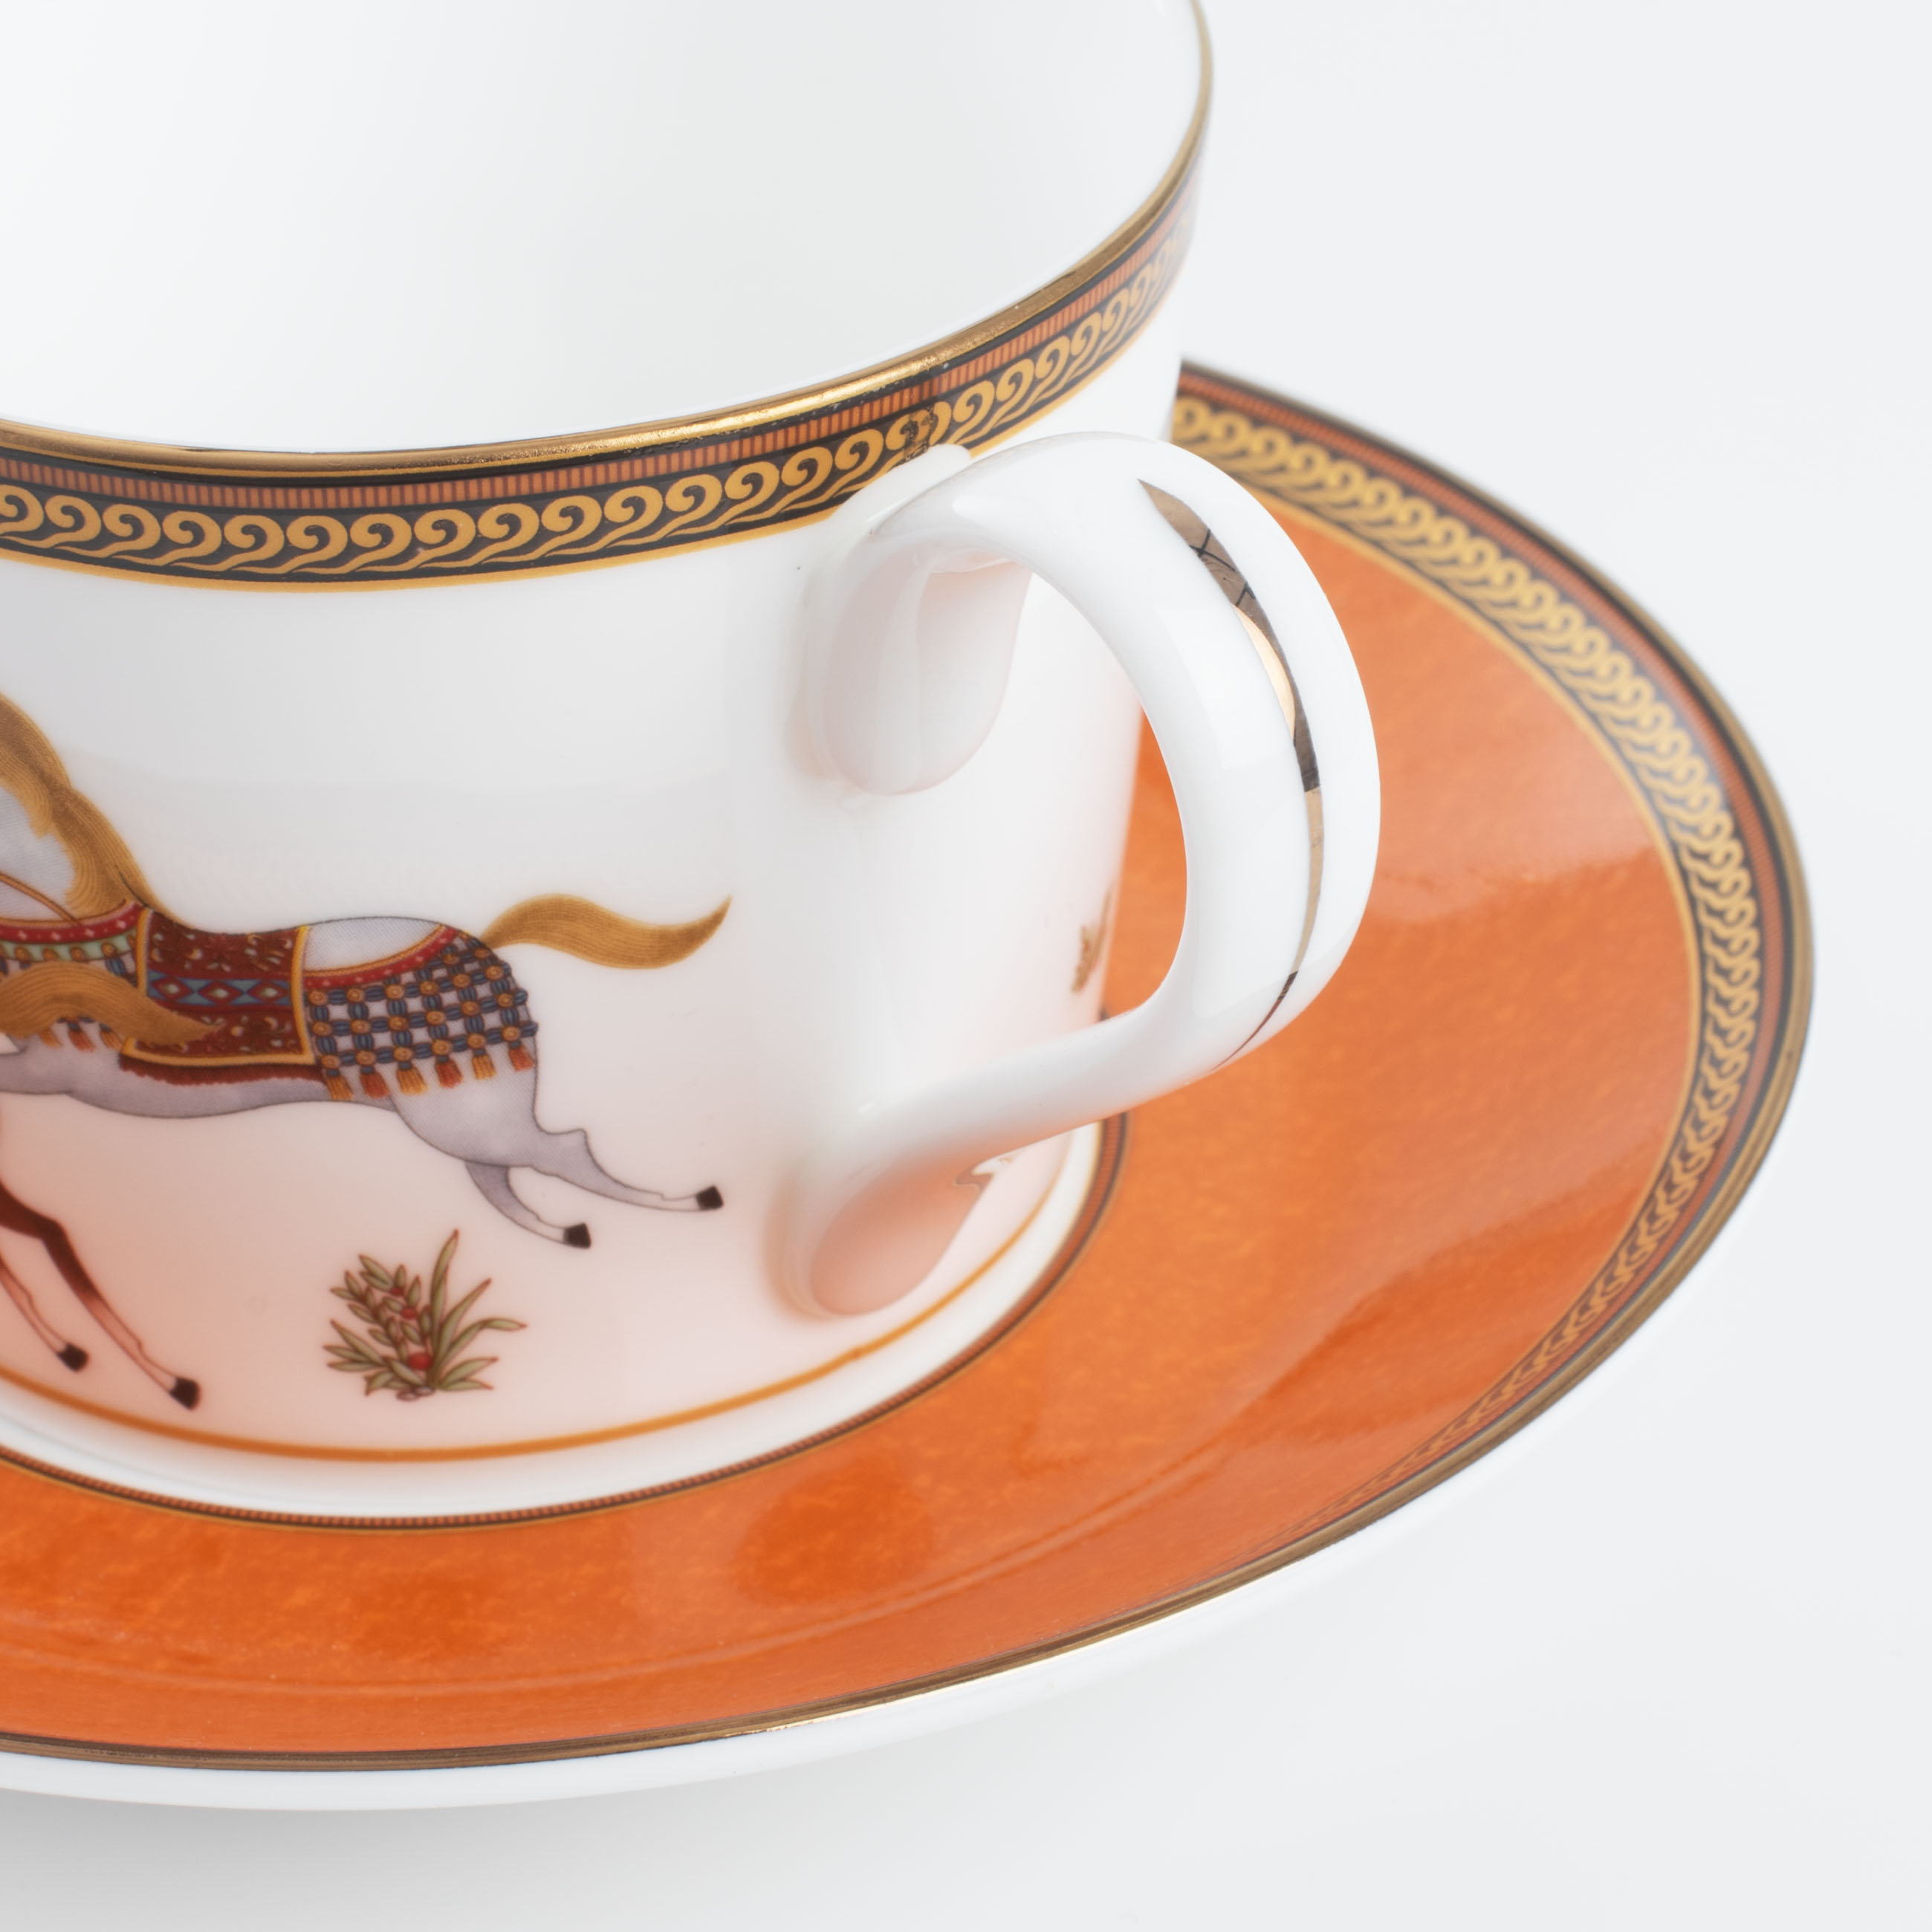 Пара чайная, 1 перс, 2 пр, 250 мл, фарфор F, коричневая, Скачки, Blue wind изображение № 4